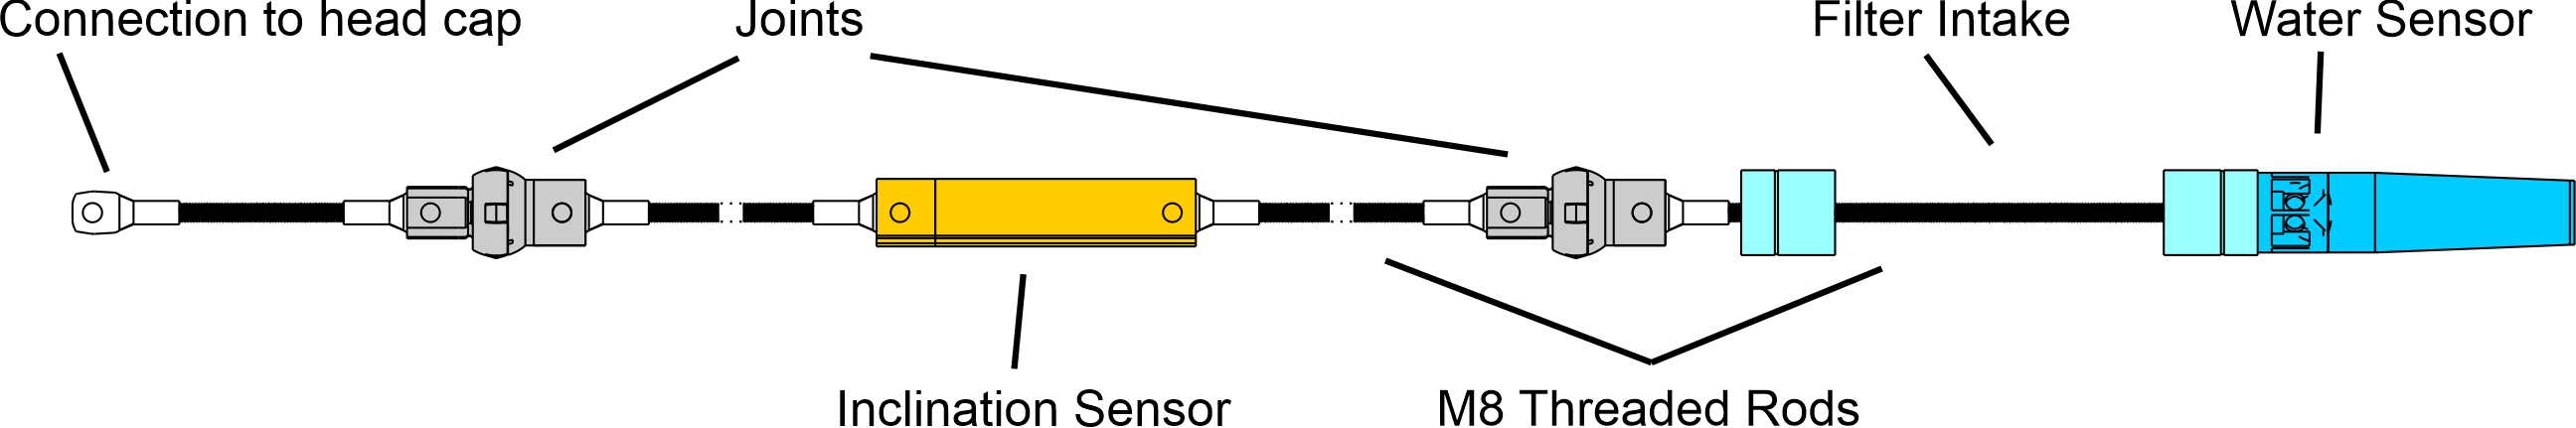 Dibujo conceptual de los sensores de nodos subsuperficiales. La distancia entre dos juntas es siempre exactamente 1~m.